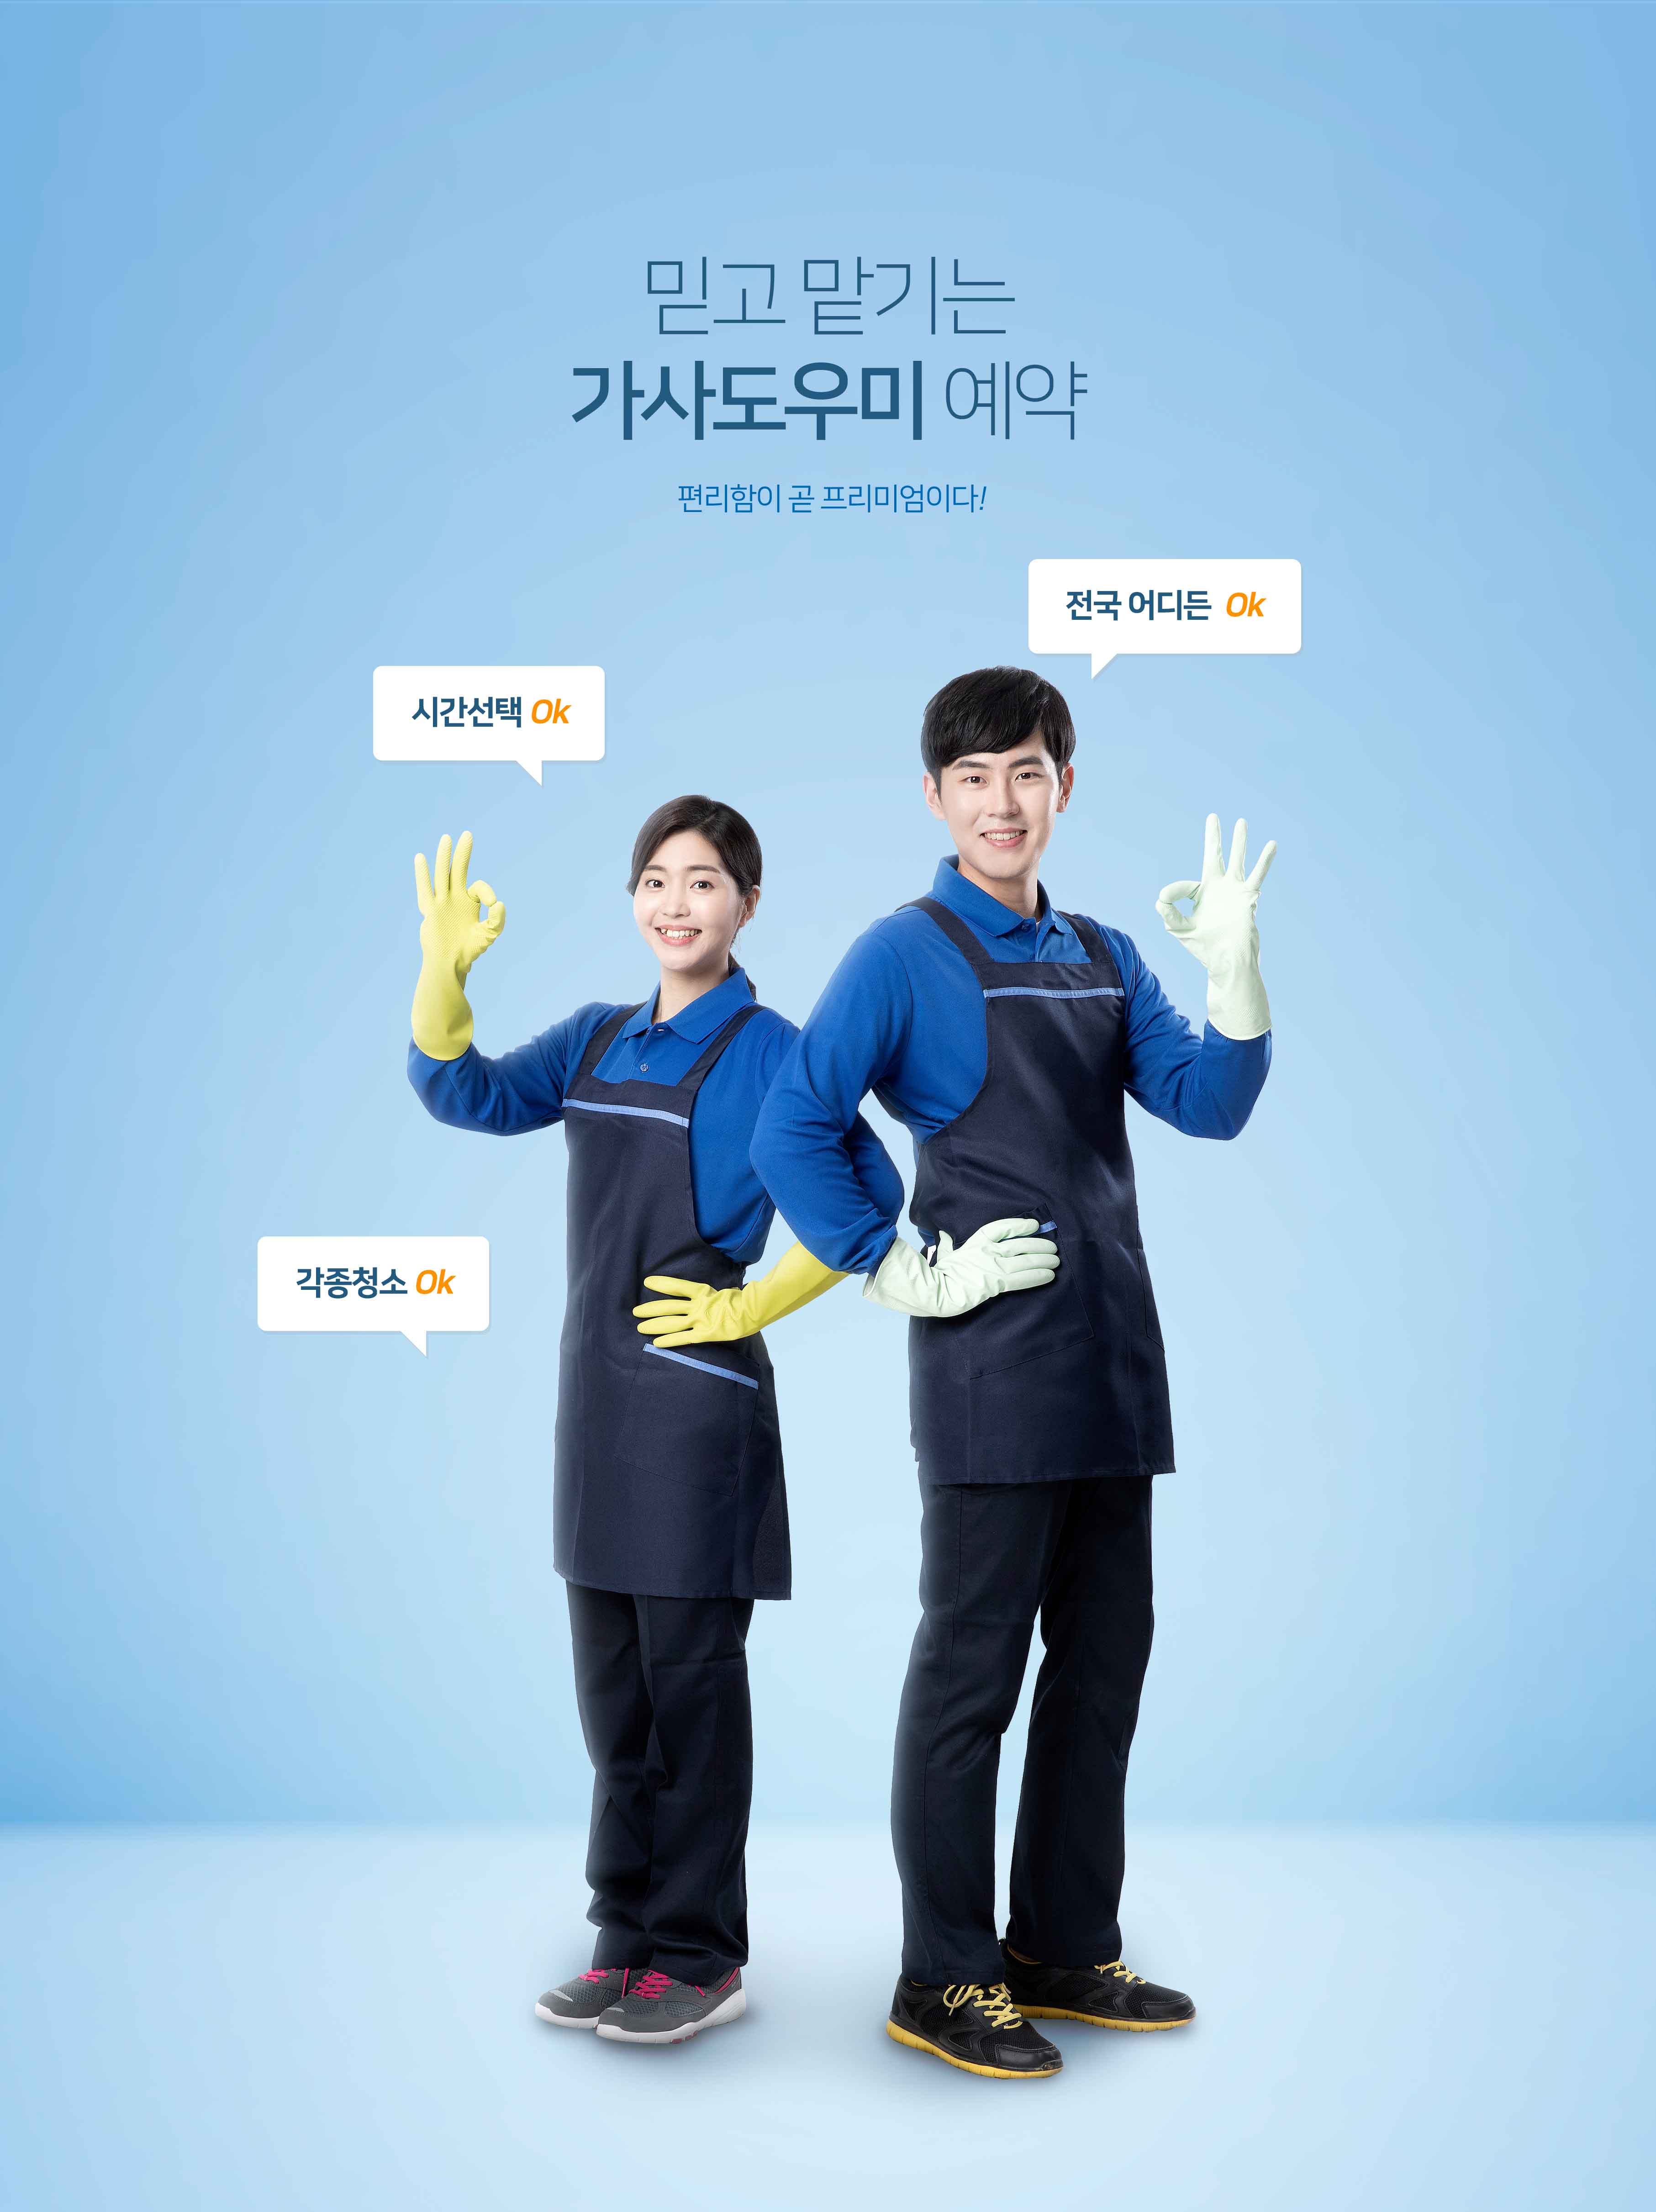 清洁服务保洁公司推广主题海报PSD素材素材库精选韩国素材插图